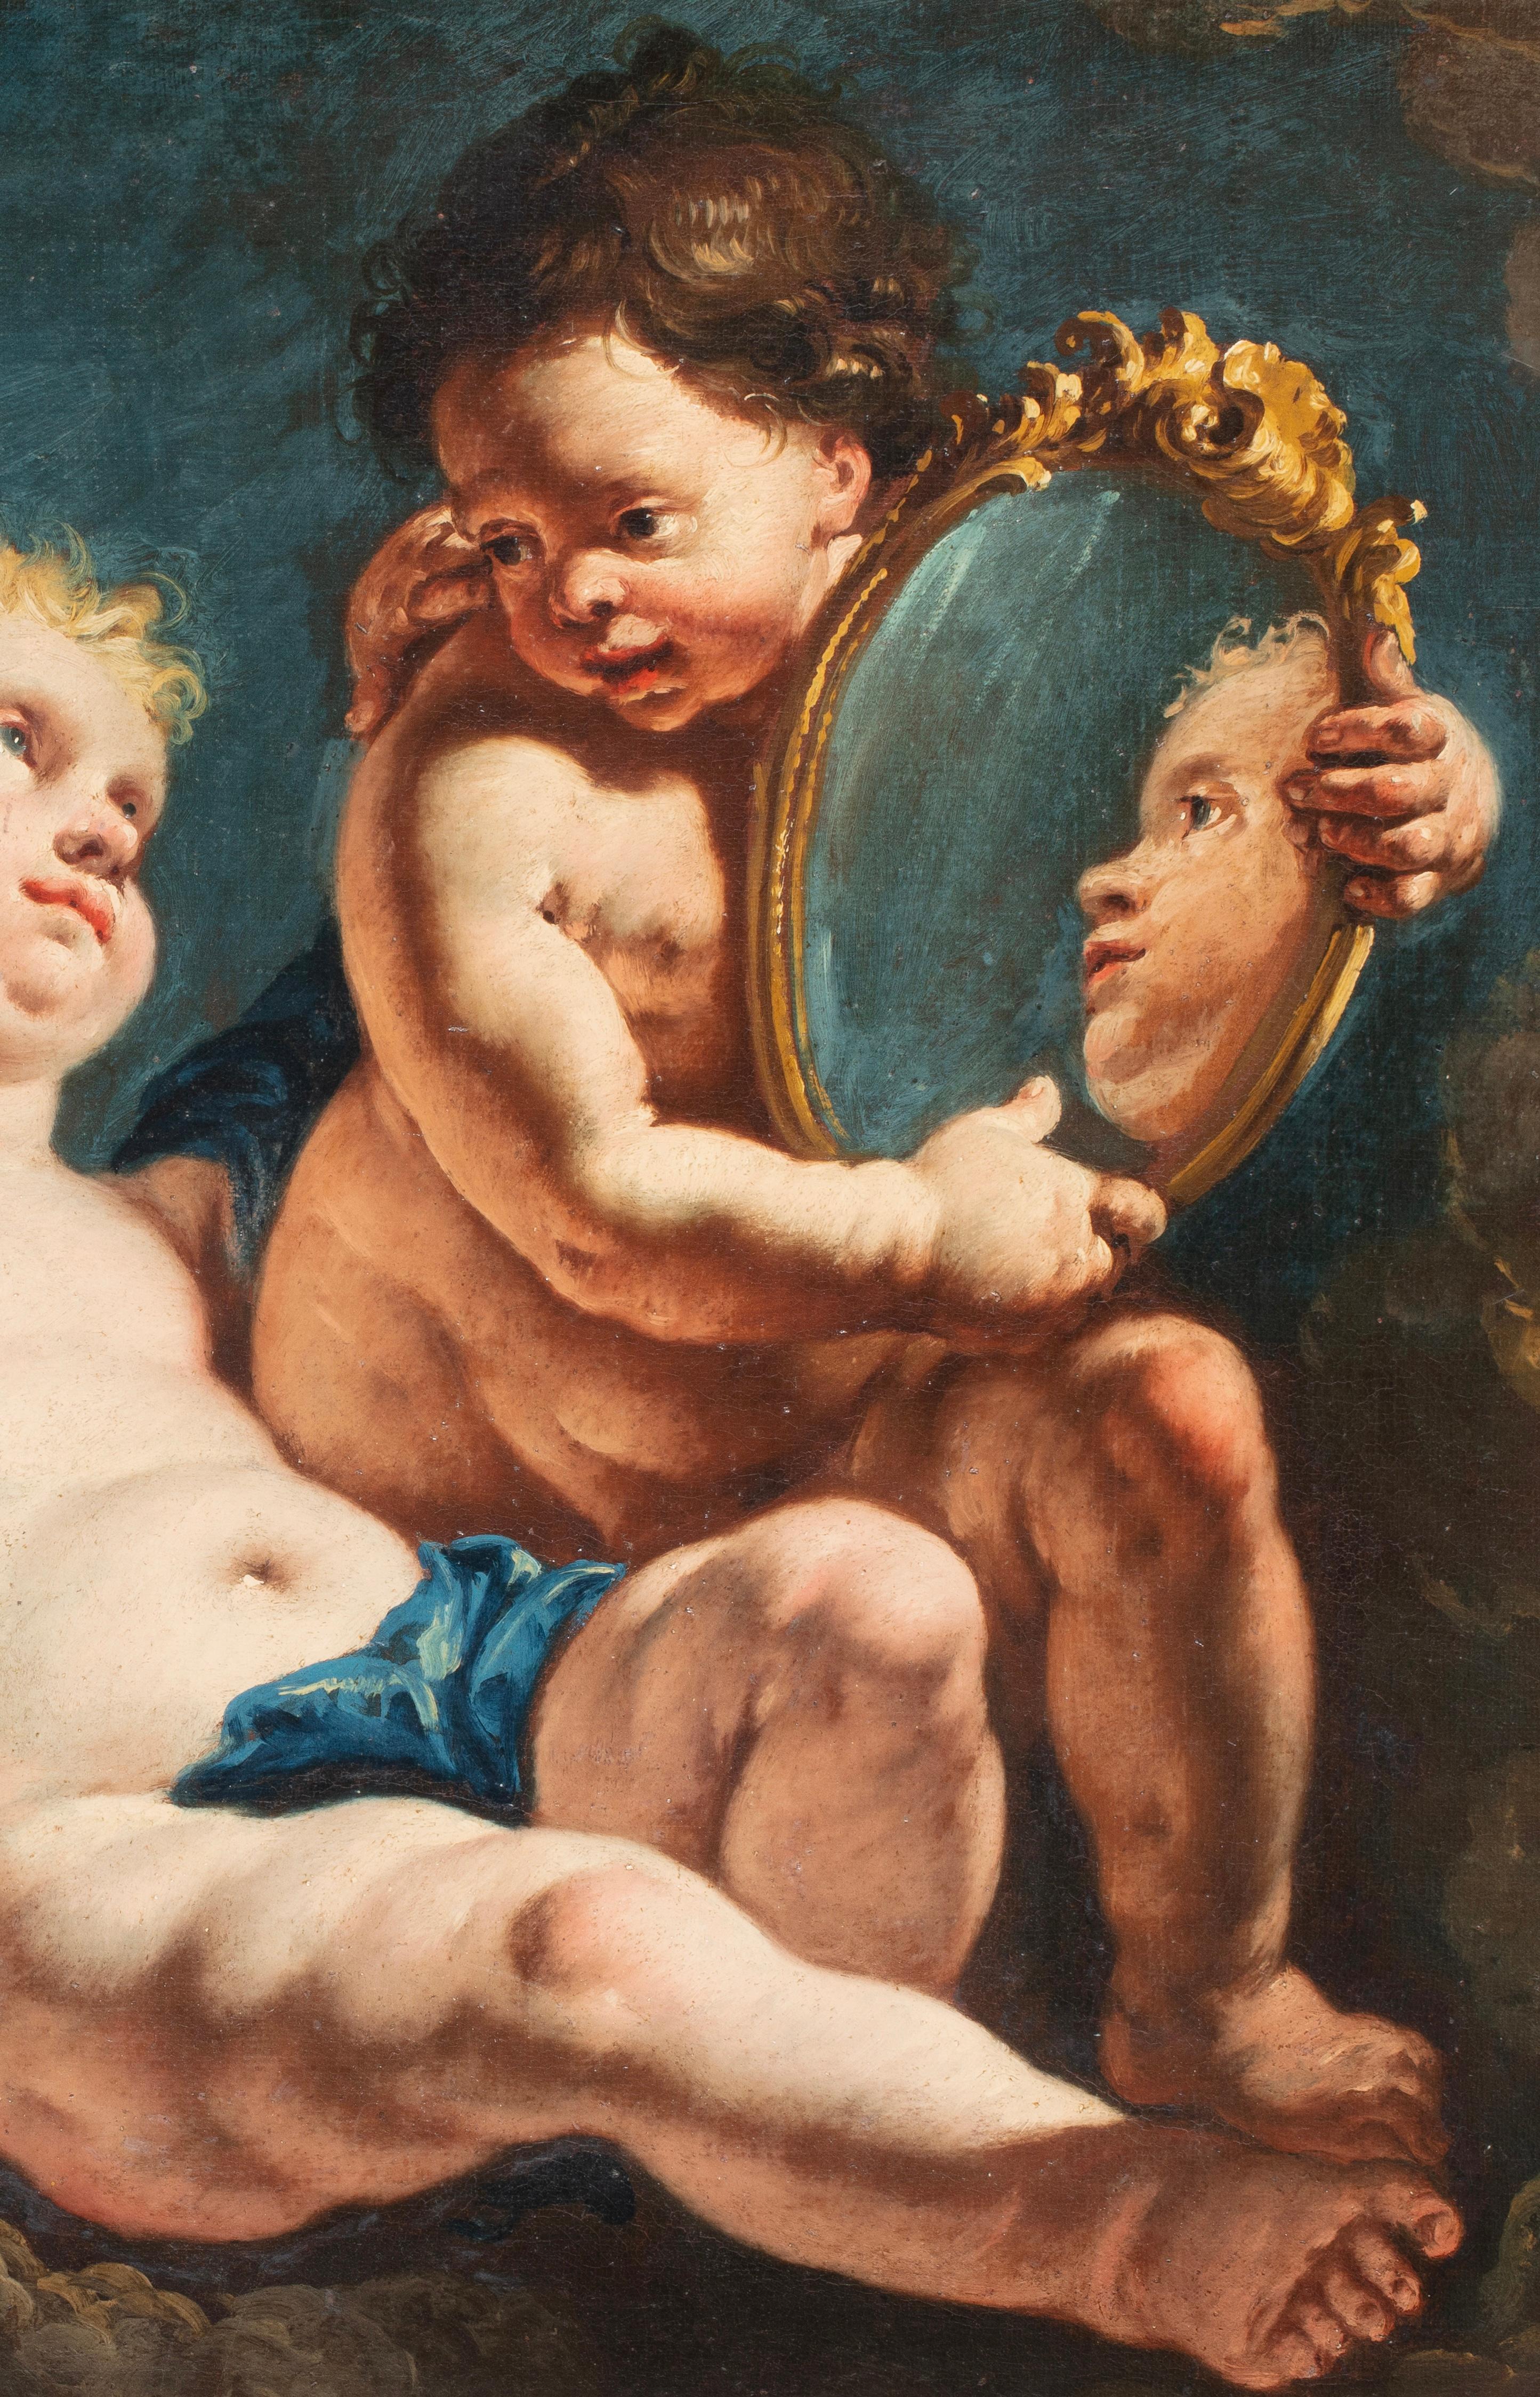 Huile sur toile du 18ème siècle par Francesco Fontebasso, Allégorie de la toilette - Maîtres anciens Painting par Francesco Fontebasso (Venice 1709 - 1769)